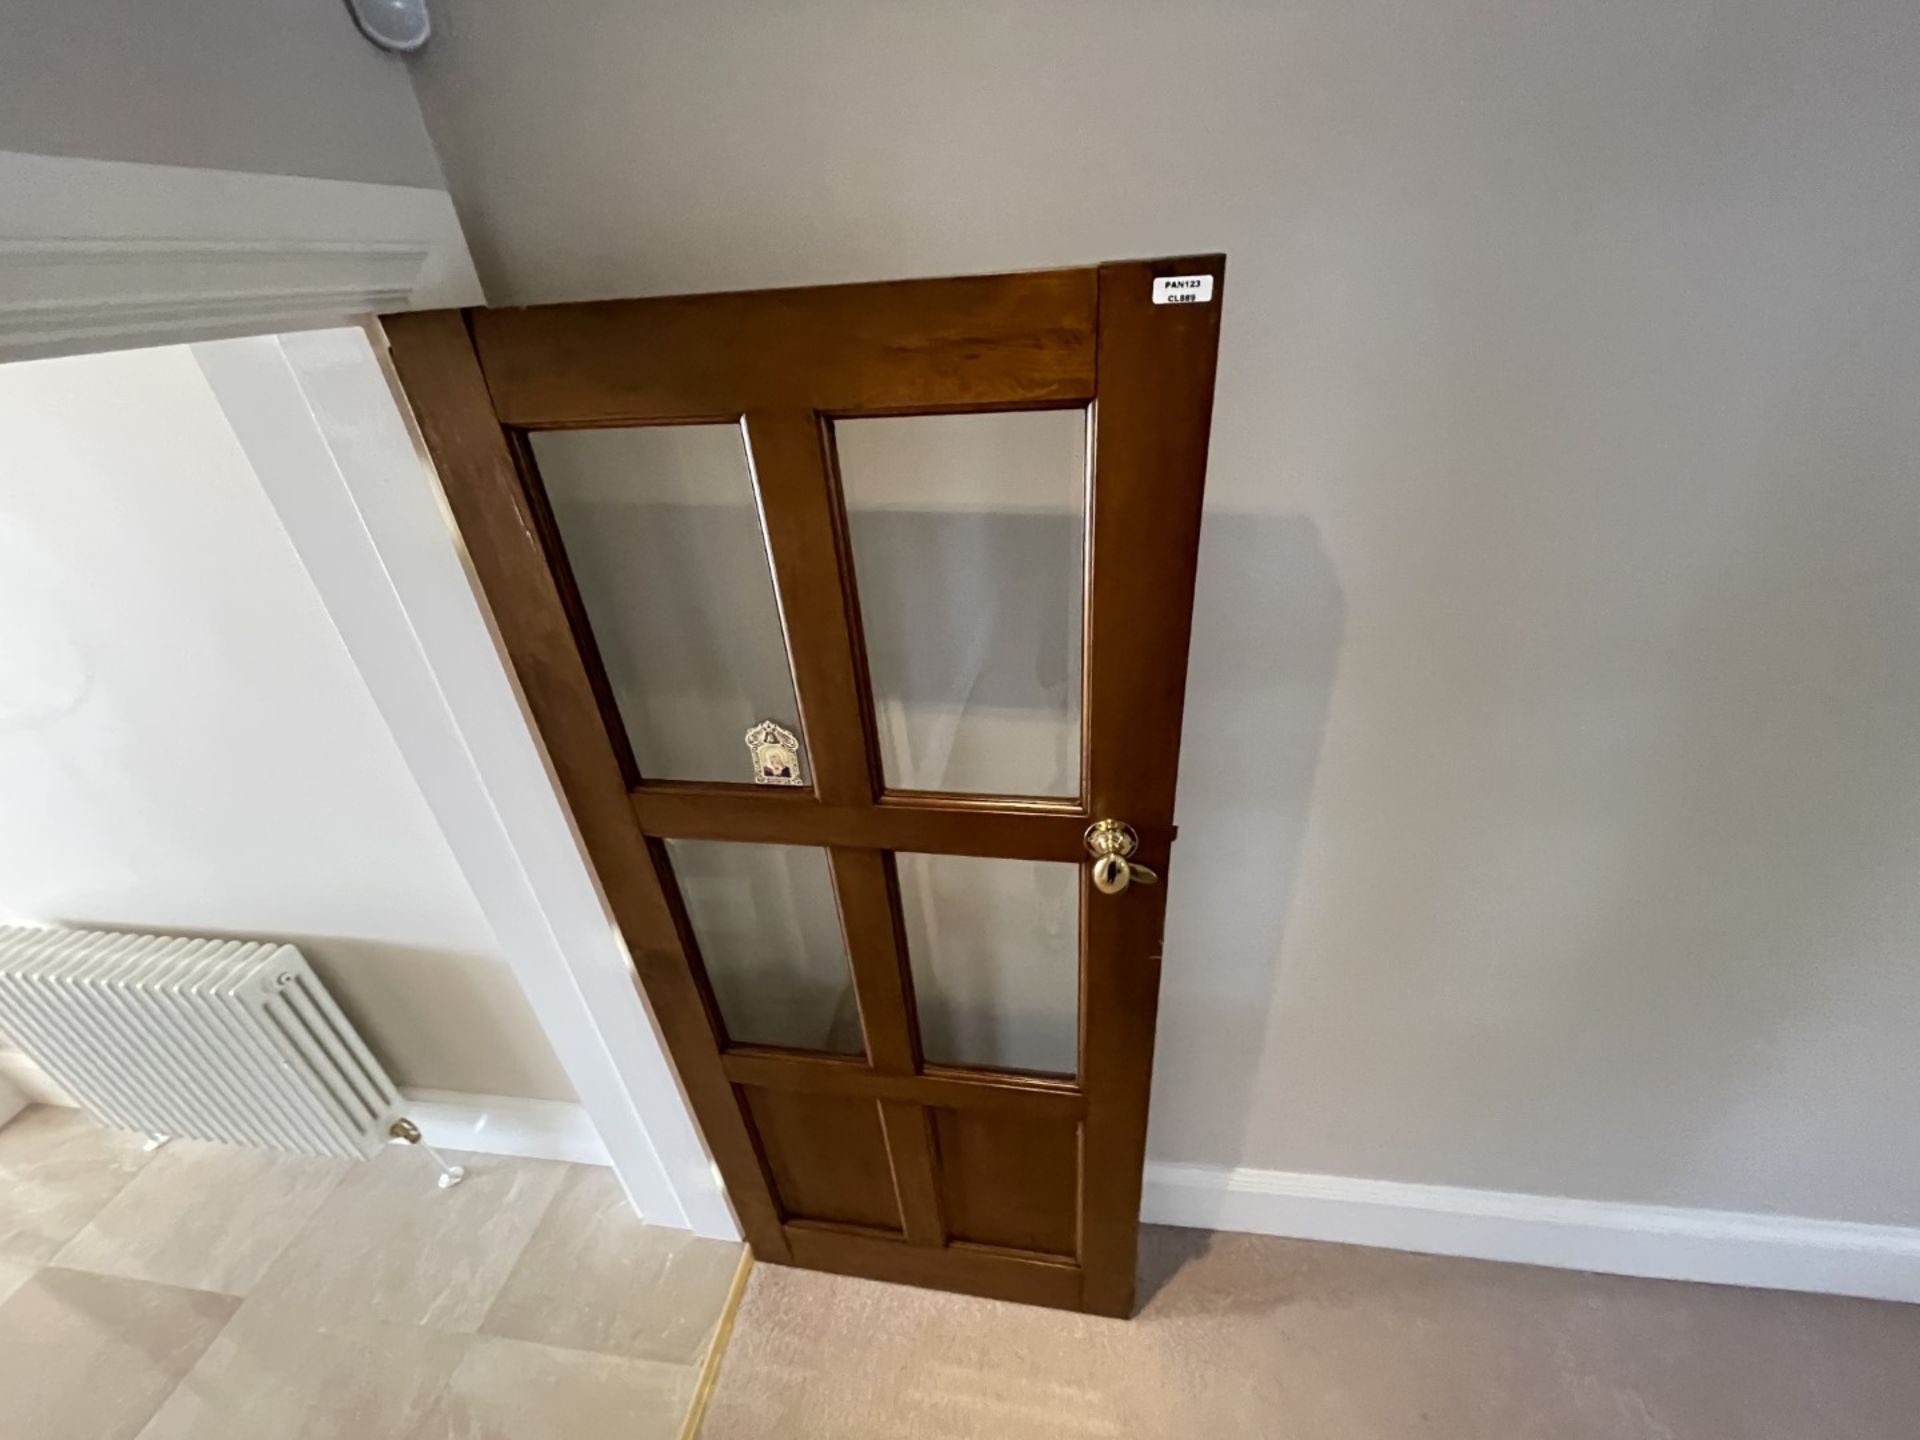 1 x Solid Wood Lockable Internal Door - Ref: PAN123 - CL896 - NO VAT ON THE HAMMER - Image 5 of 30